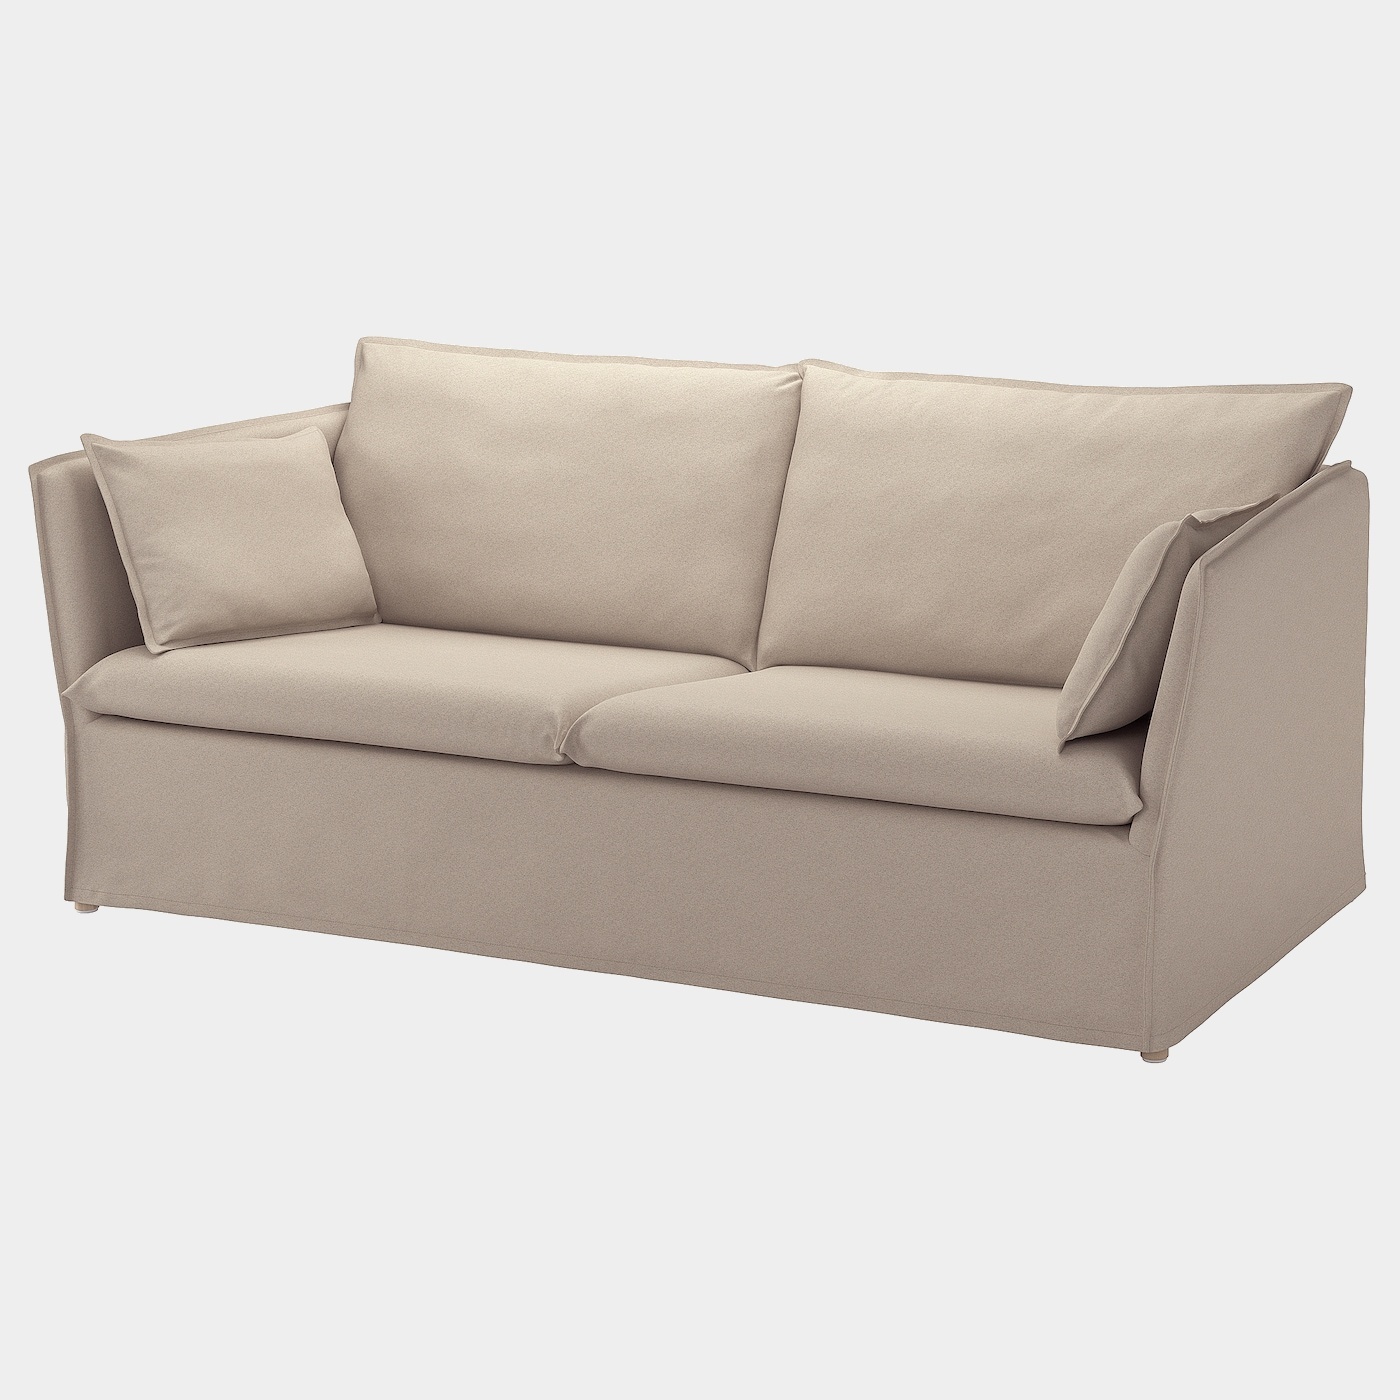 BACKSÄLEN 3er-Sofa  -  - Möbel Ideen für dein Zuhause von Home Trends. Möbel Trends von Social Media Influencer für dein Skandi Zuhause.